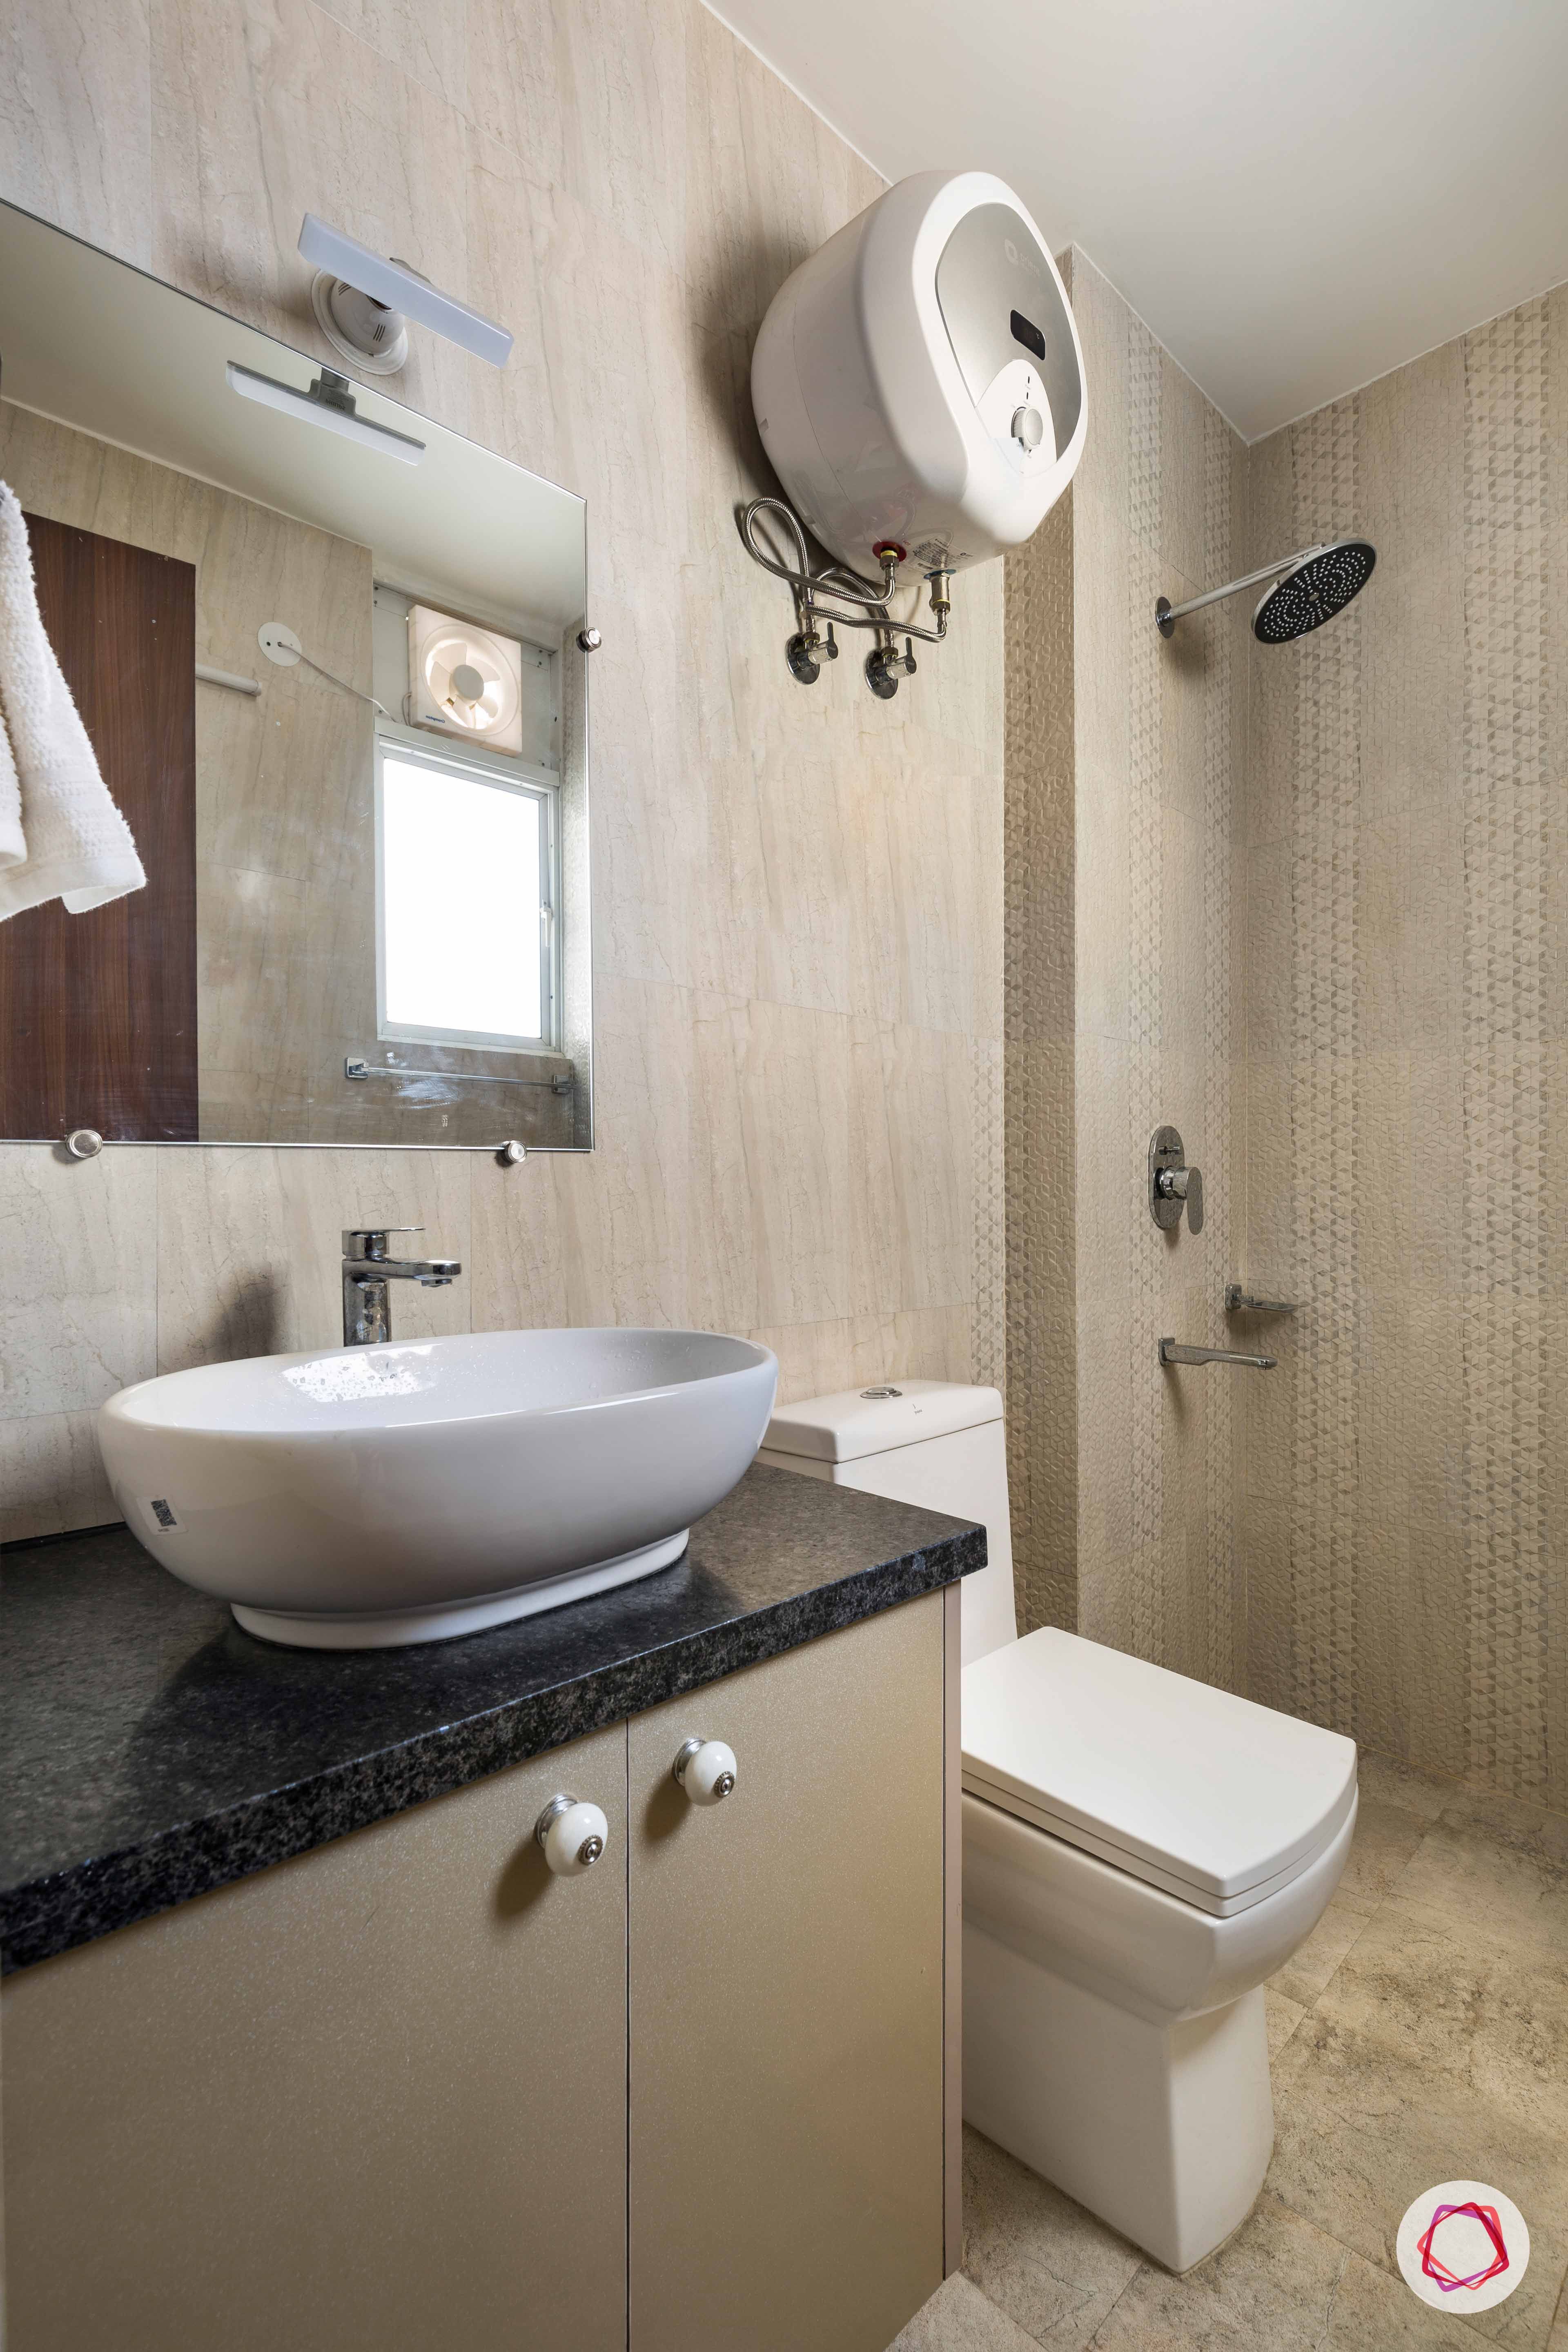 bathroom-printed-tiles-brown-sink-storage